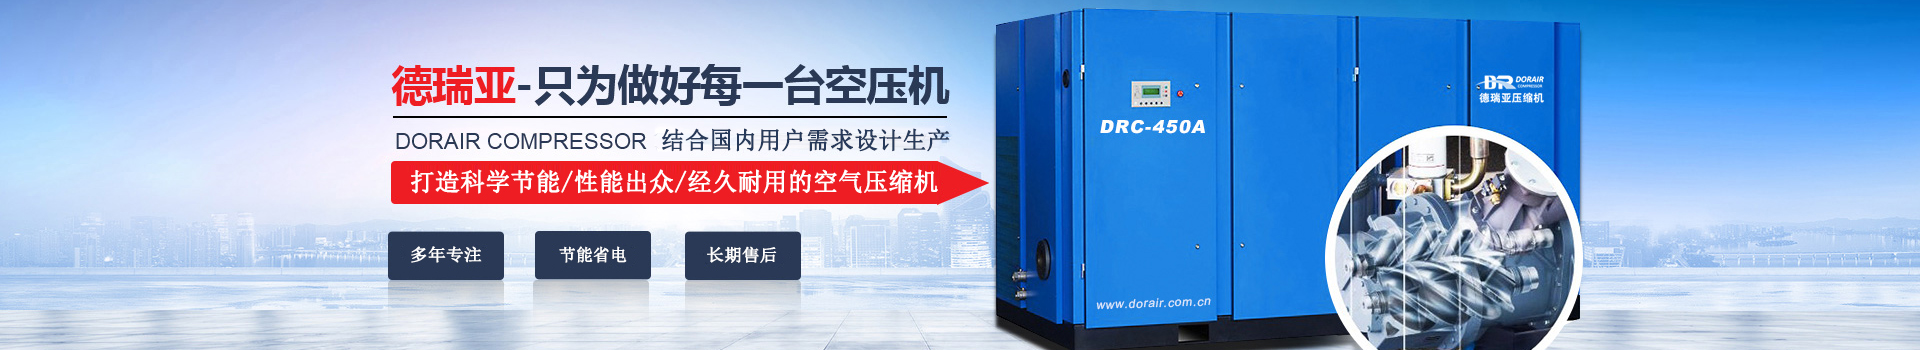 德瑞亞空壓機，中國高品質空壓機倡導者